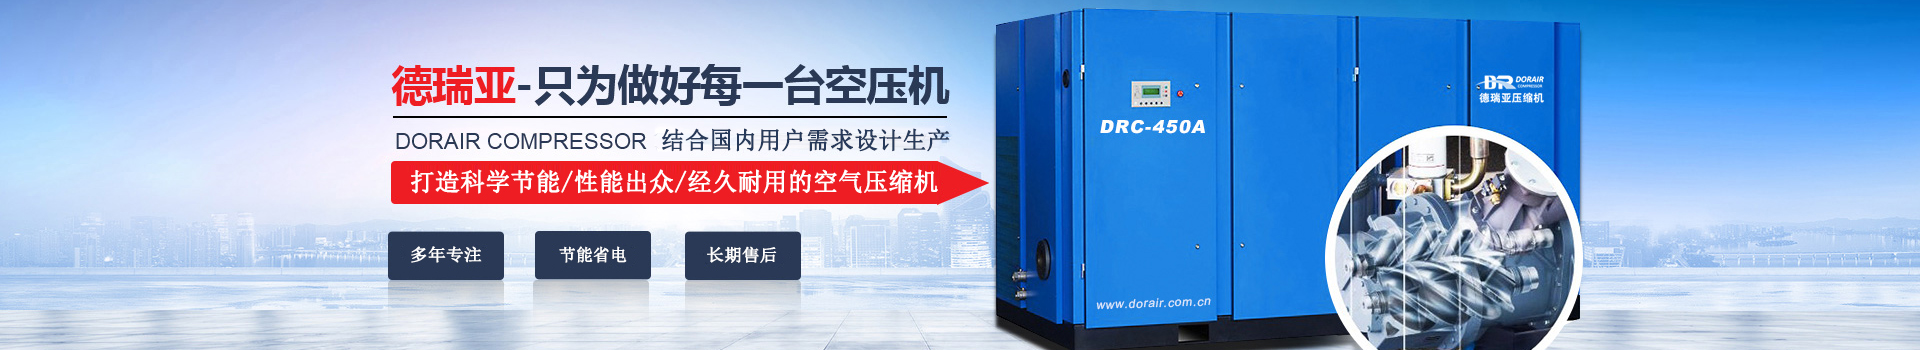 德瑞亞空壓機，中國高品質空壓機倡導者